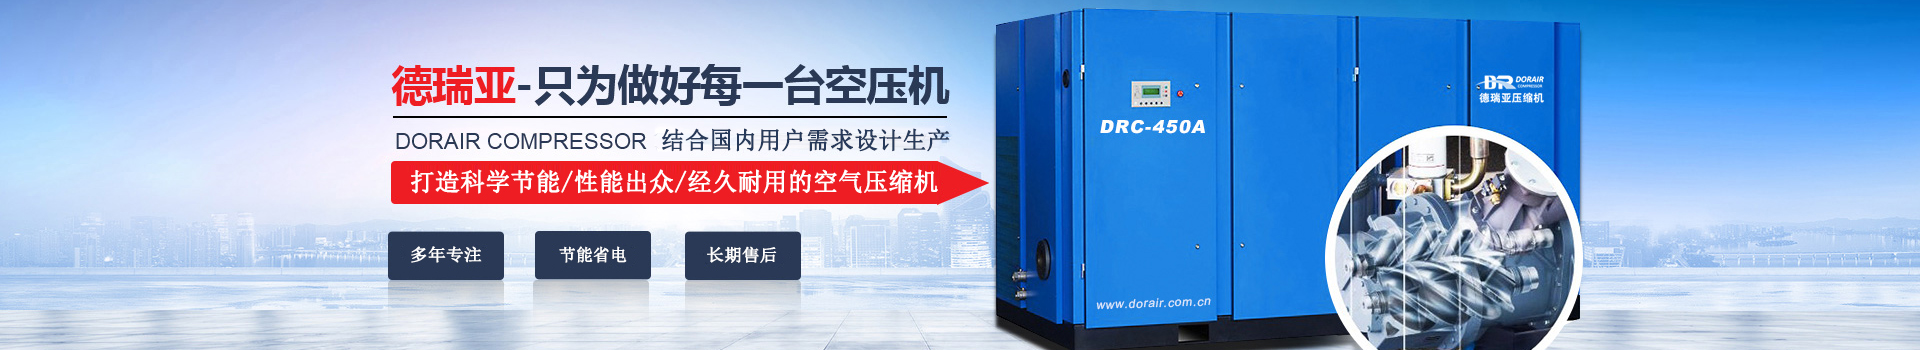 德瑞亞空壓機，中國高品質空壓機倡導者